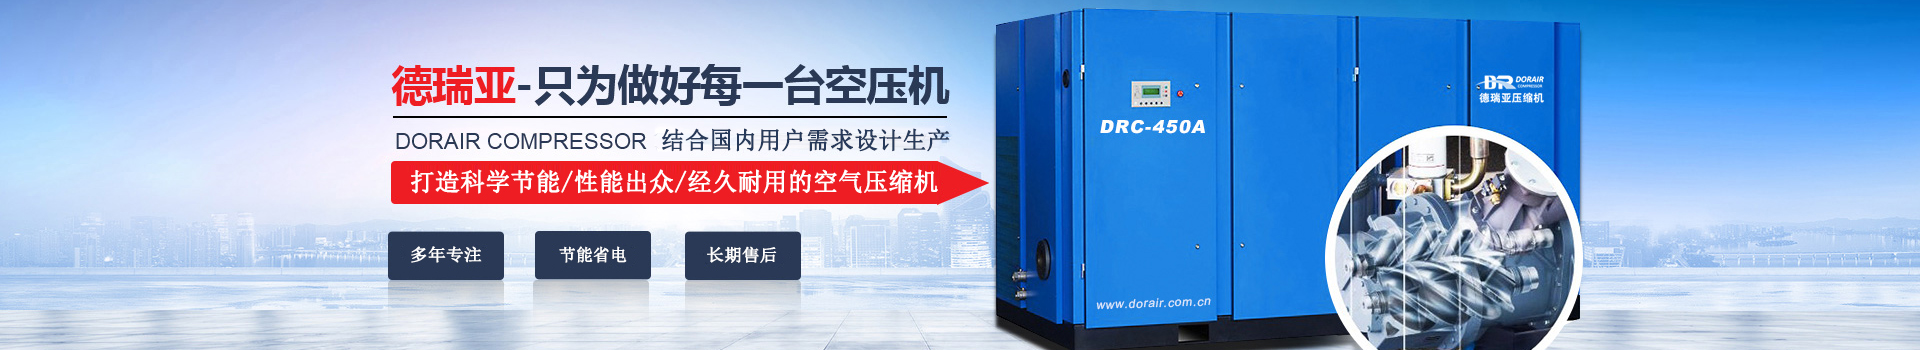 德瑞亞空壓機，中國高品質空壓機倡導者